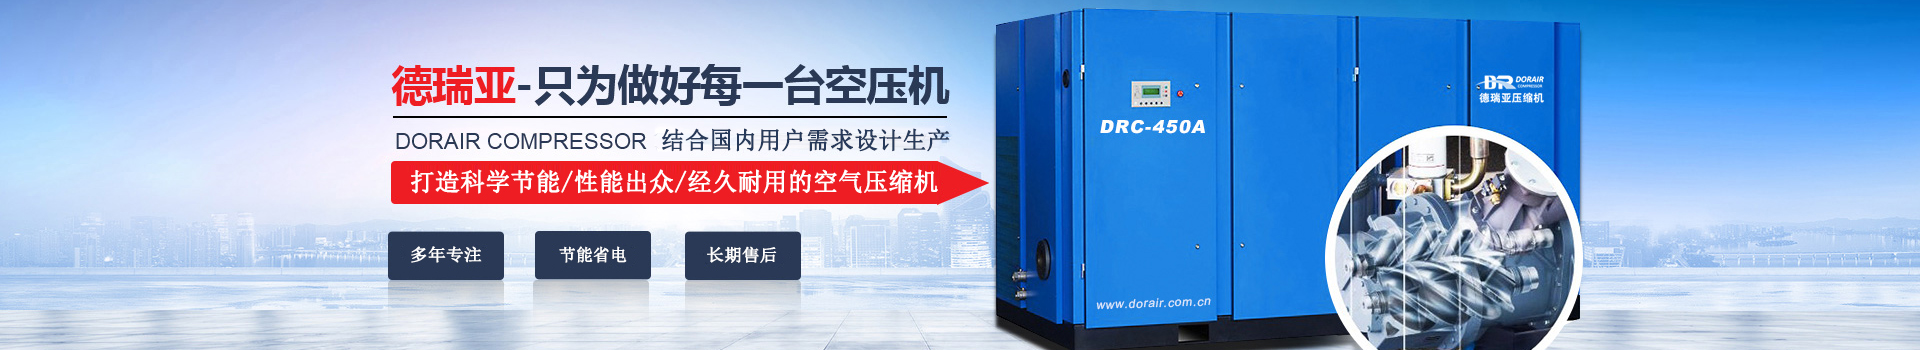 德瑞亞空壓機，中國高品質空壓機倡導者